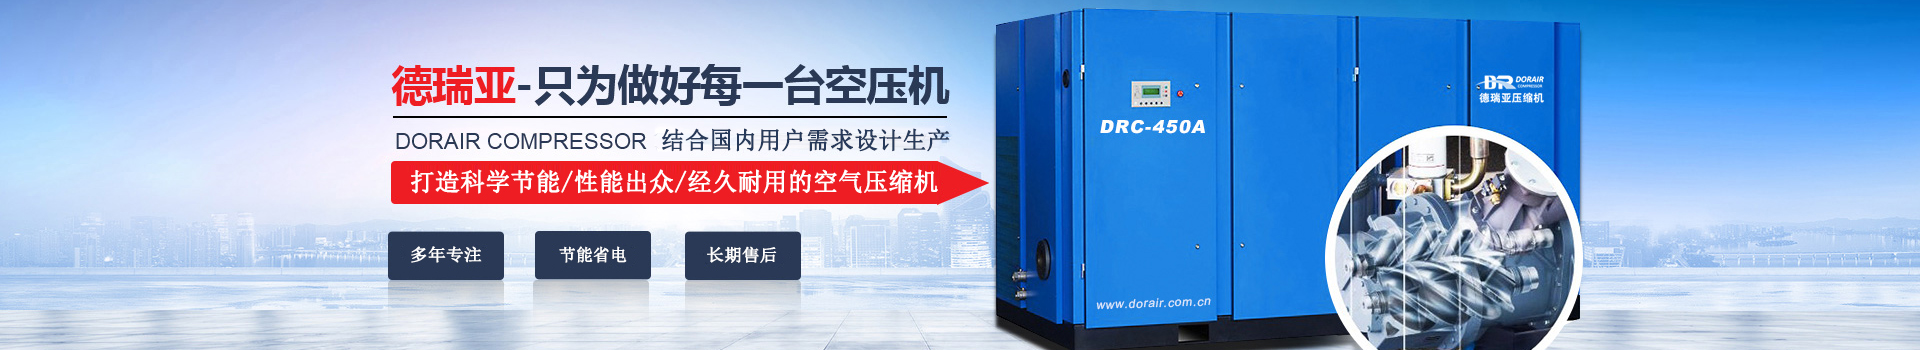 德瑞亞空壓機，中國高品質空壓機倡導者